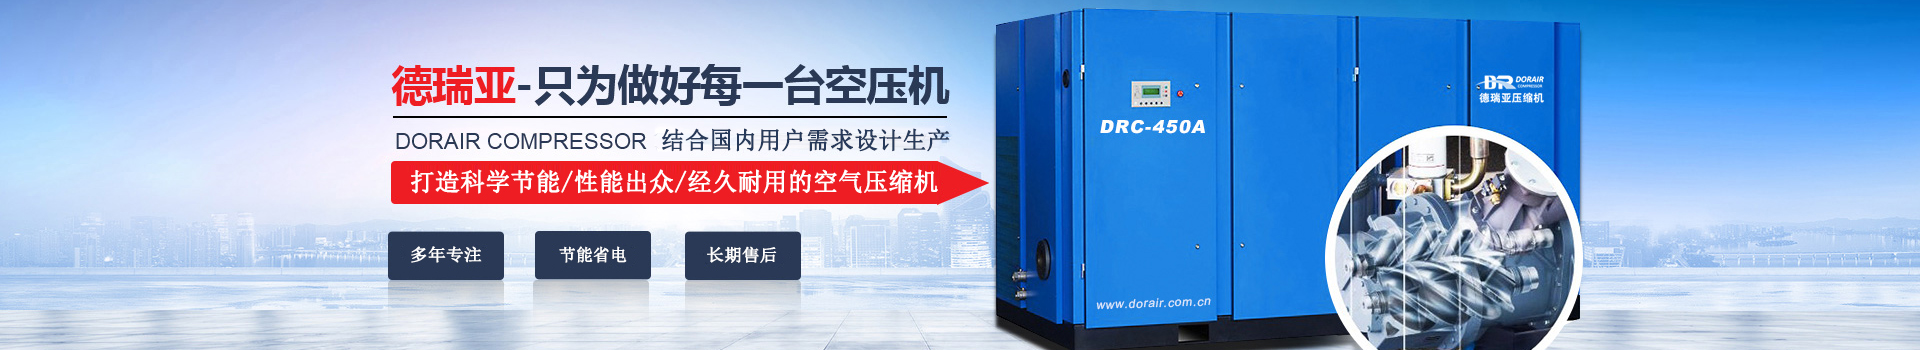 德瑞亞空壓機，中國高品質空壓機倡導者